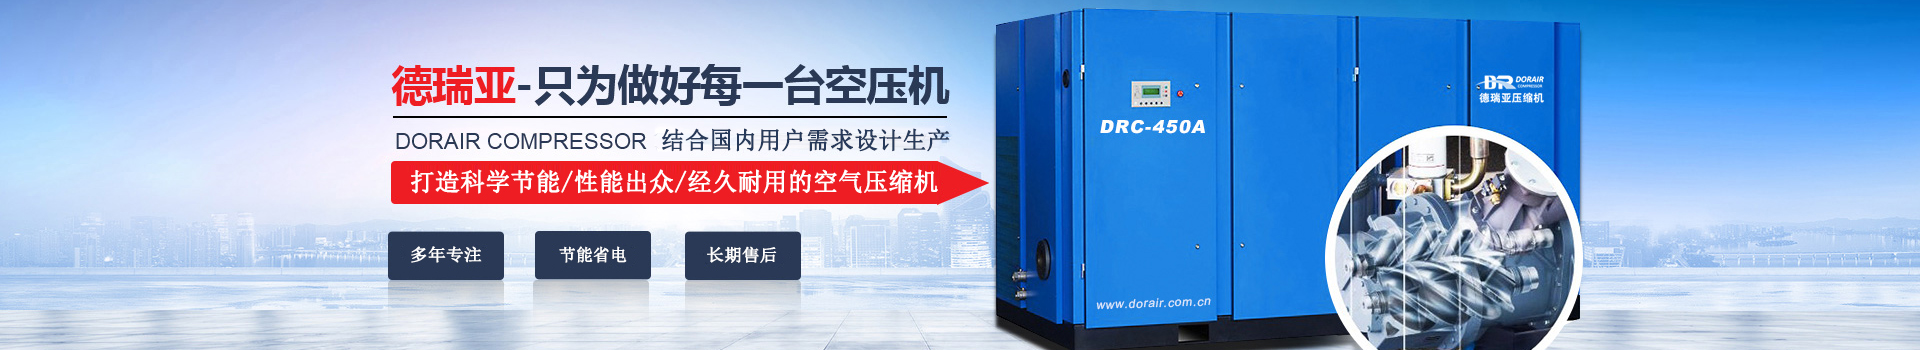 德瑞亞空壓機，中國高品質空壓機倡導者